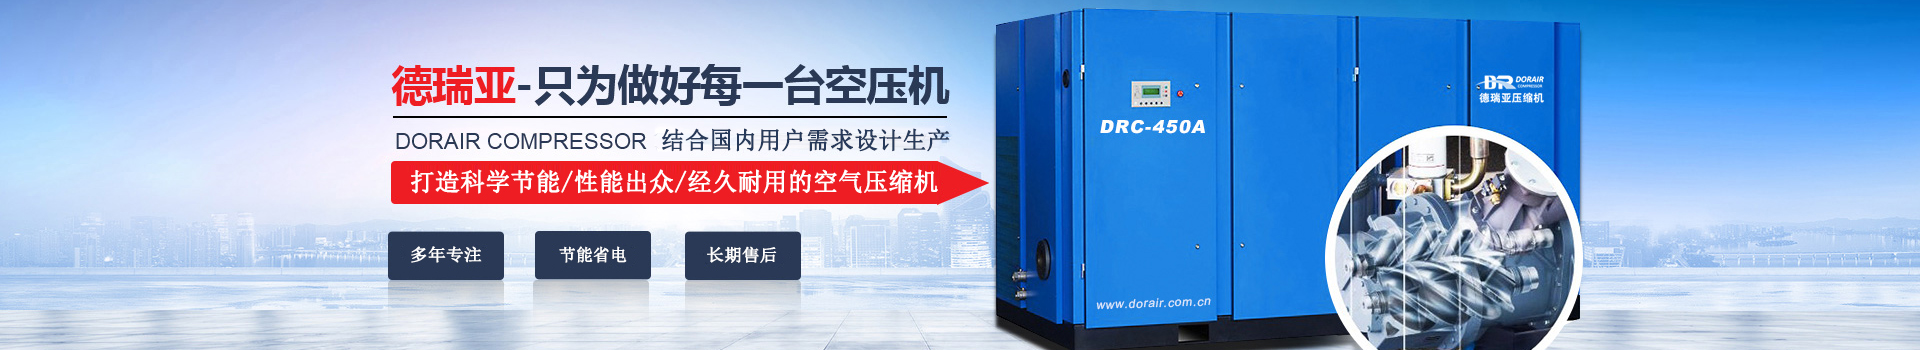 德瑞亞空壓機，中國高品質空壓機倡導者